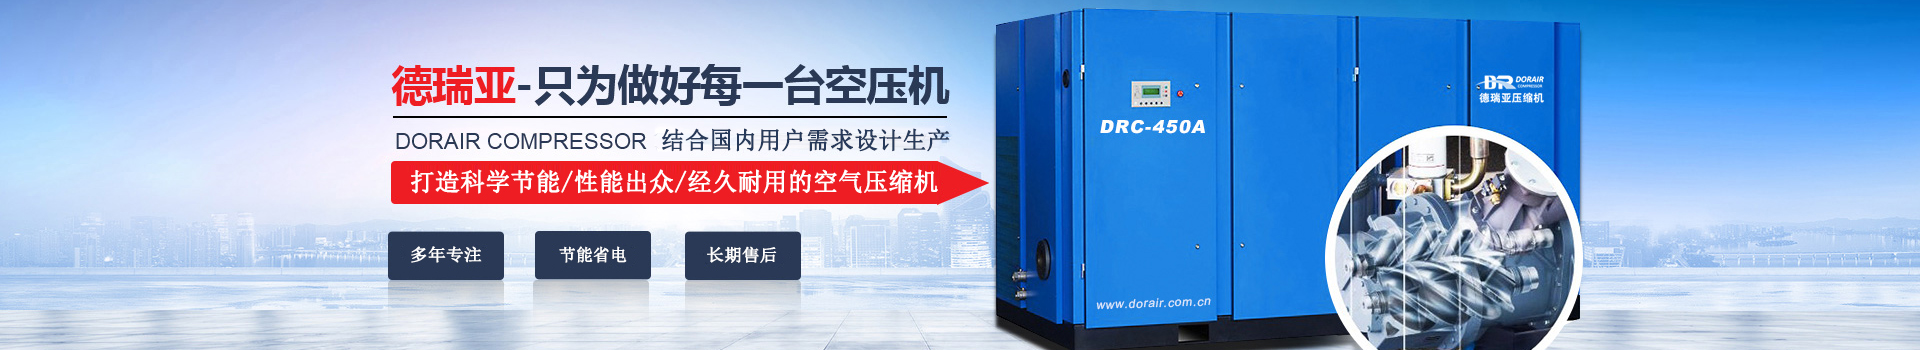 德瑞亞空壓機，中國高品質空壓機倡導者